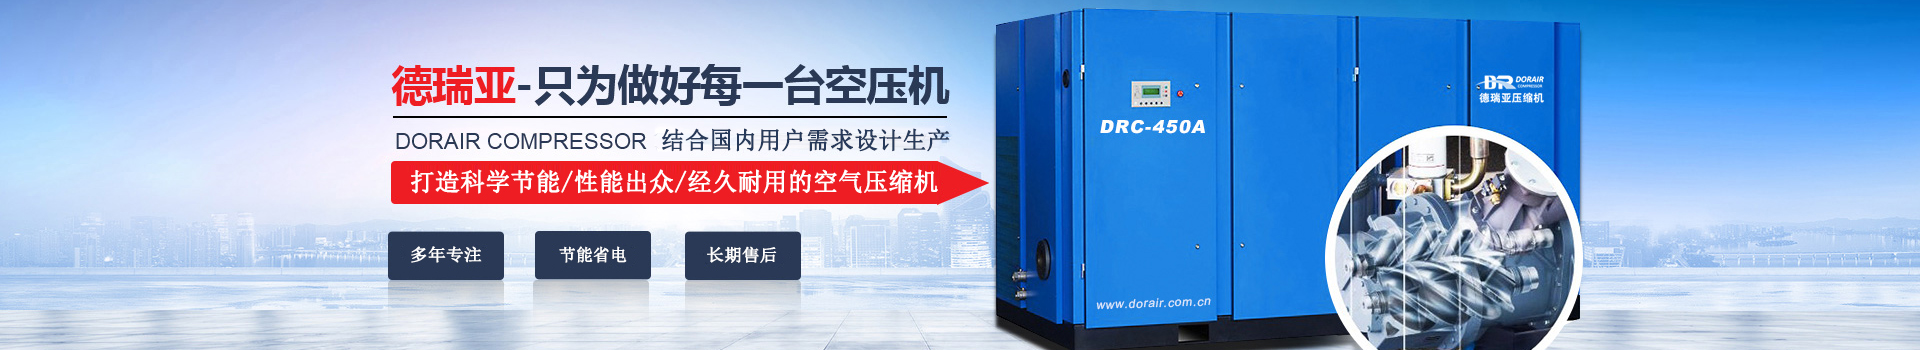 德瑞亞空壓機，中國高品質空壓機倡導者